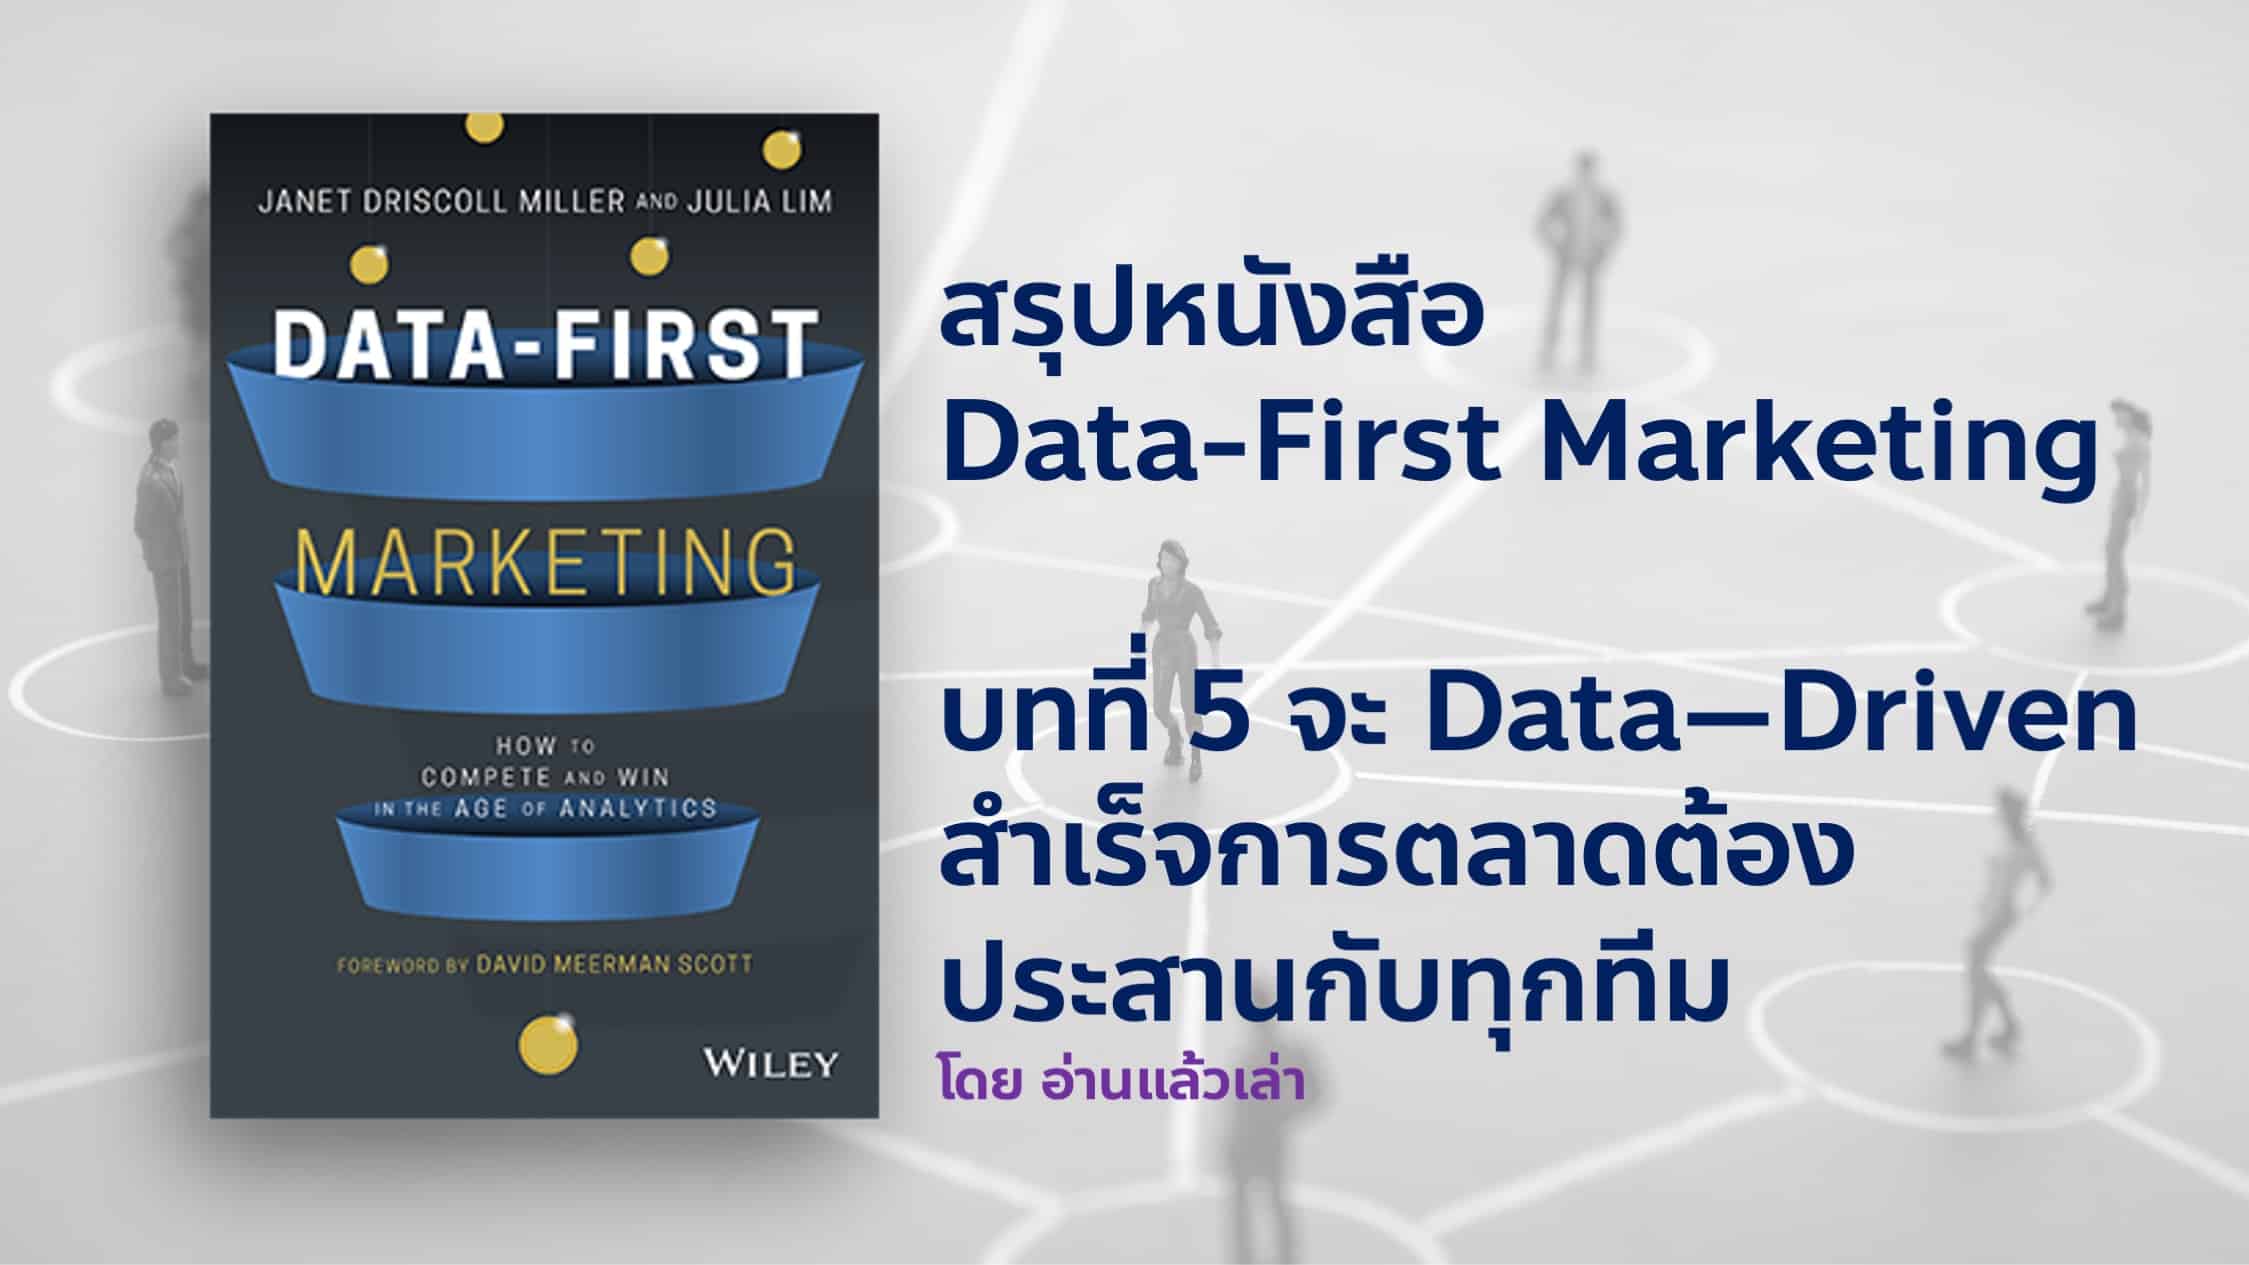 สรุปหนังสือ Data-First Marketing บทที่ 5 หนทางสู่ Data-Driven Business คือการทำงานร่วมกันระหว่าง Marketing และ Business ทั้งหมด